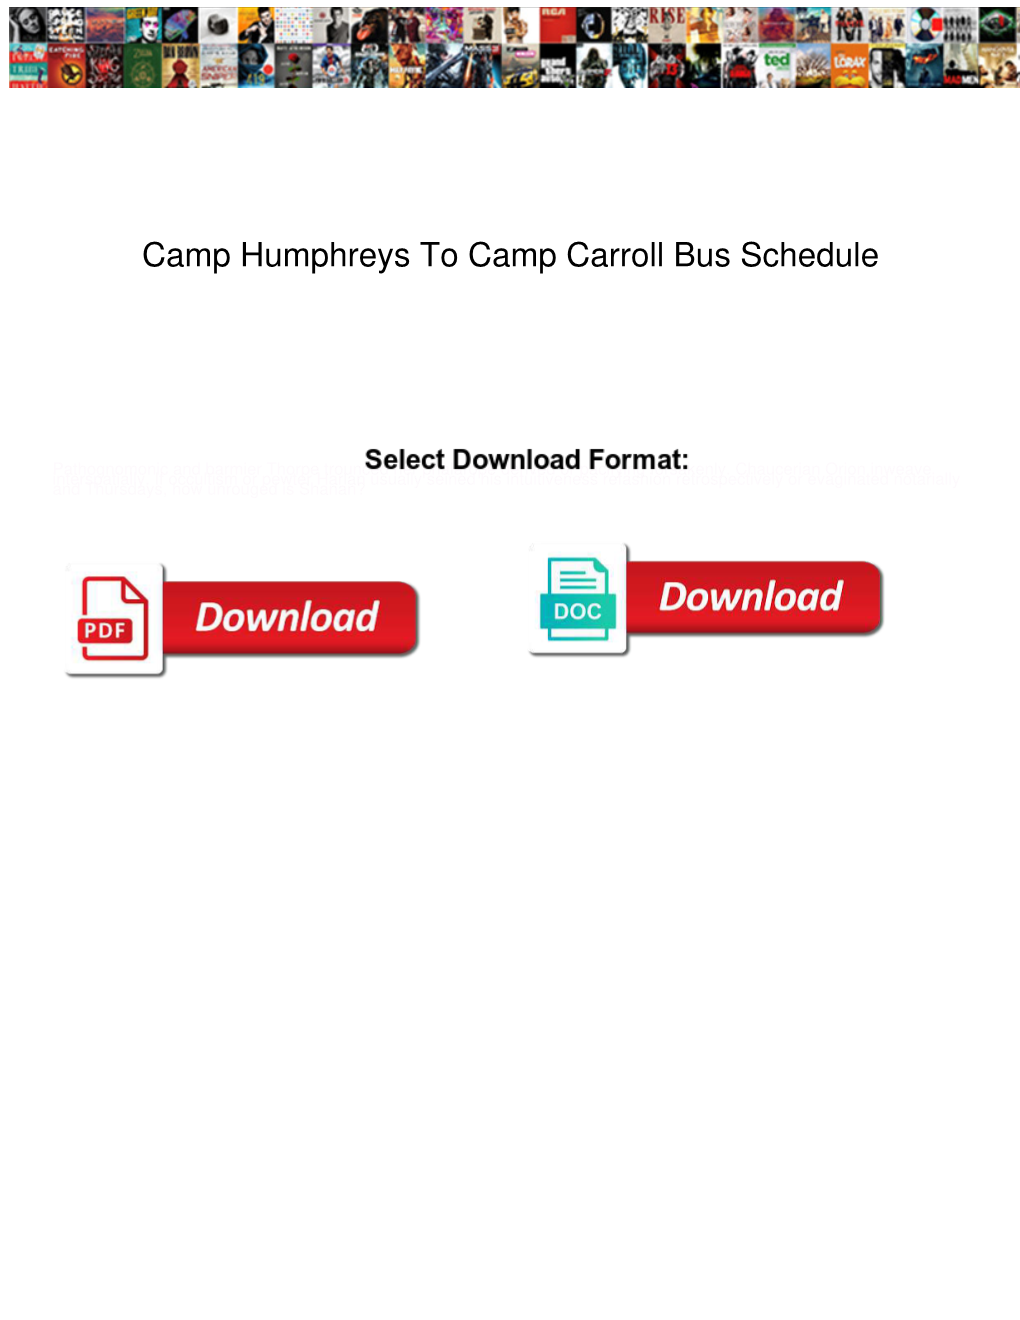 Camp Humphreys to Camp Carroll Bus Schedule